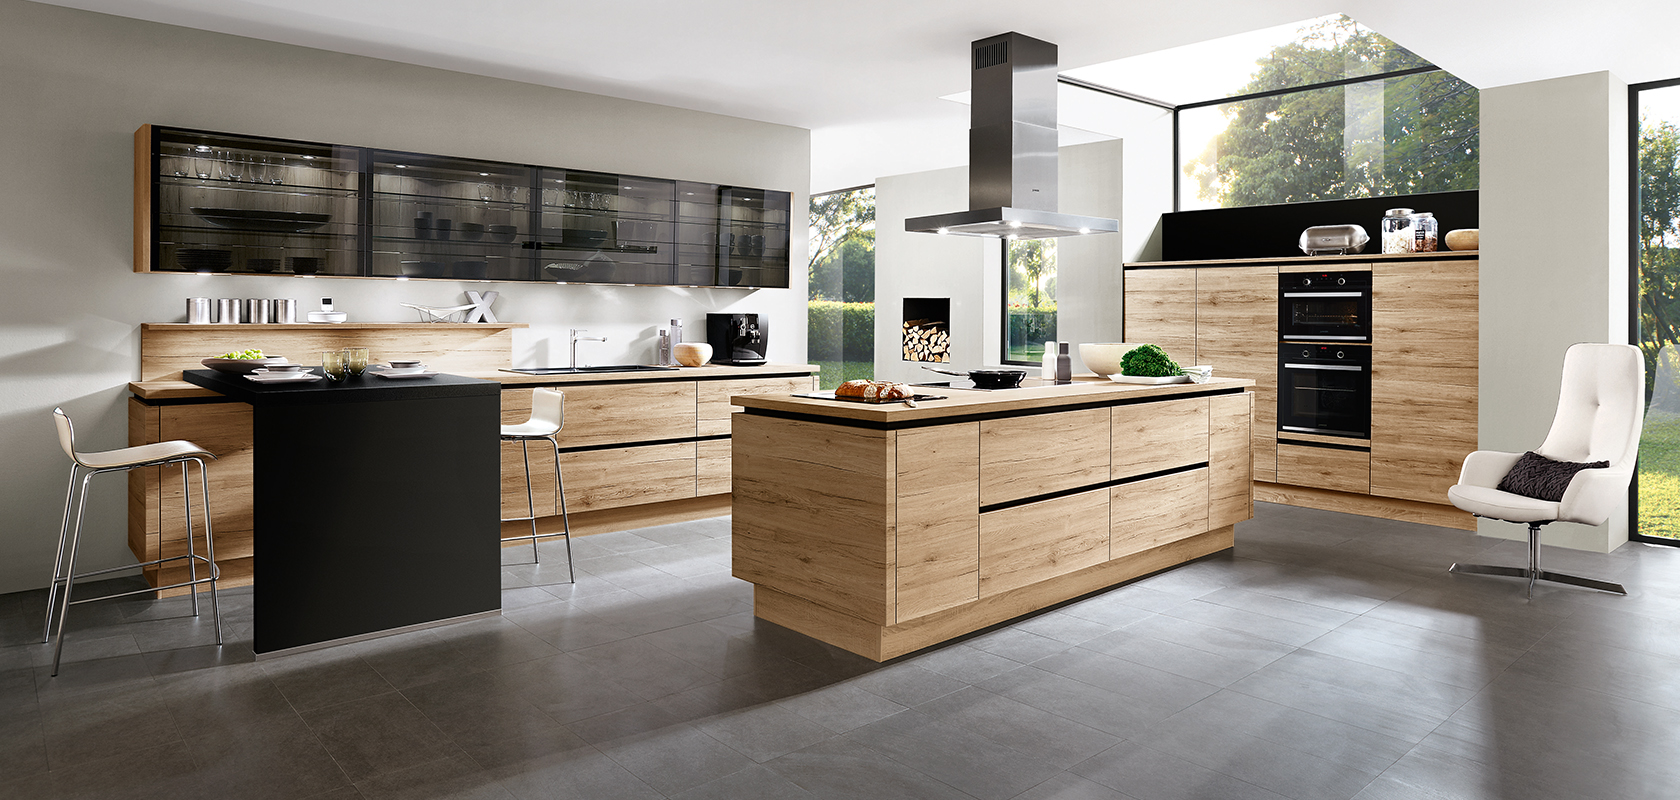 Conception intérieure moderne de cuisine avec des appareils noirs élégants, des armoires en bois et un îlot central avec une esthétique minimaliste et une abondance de lumière naturelle.